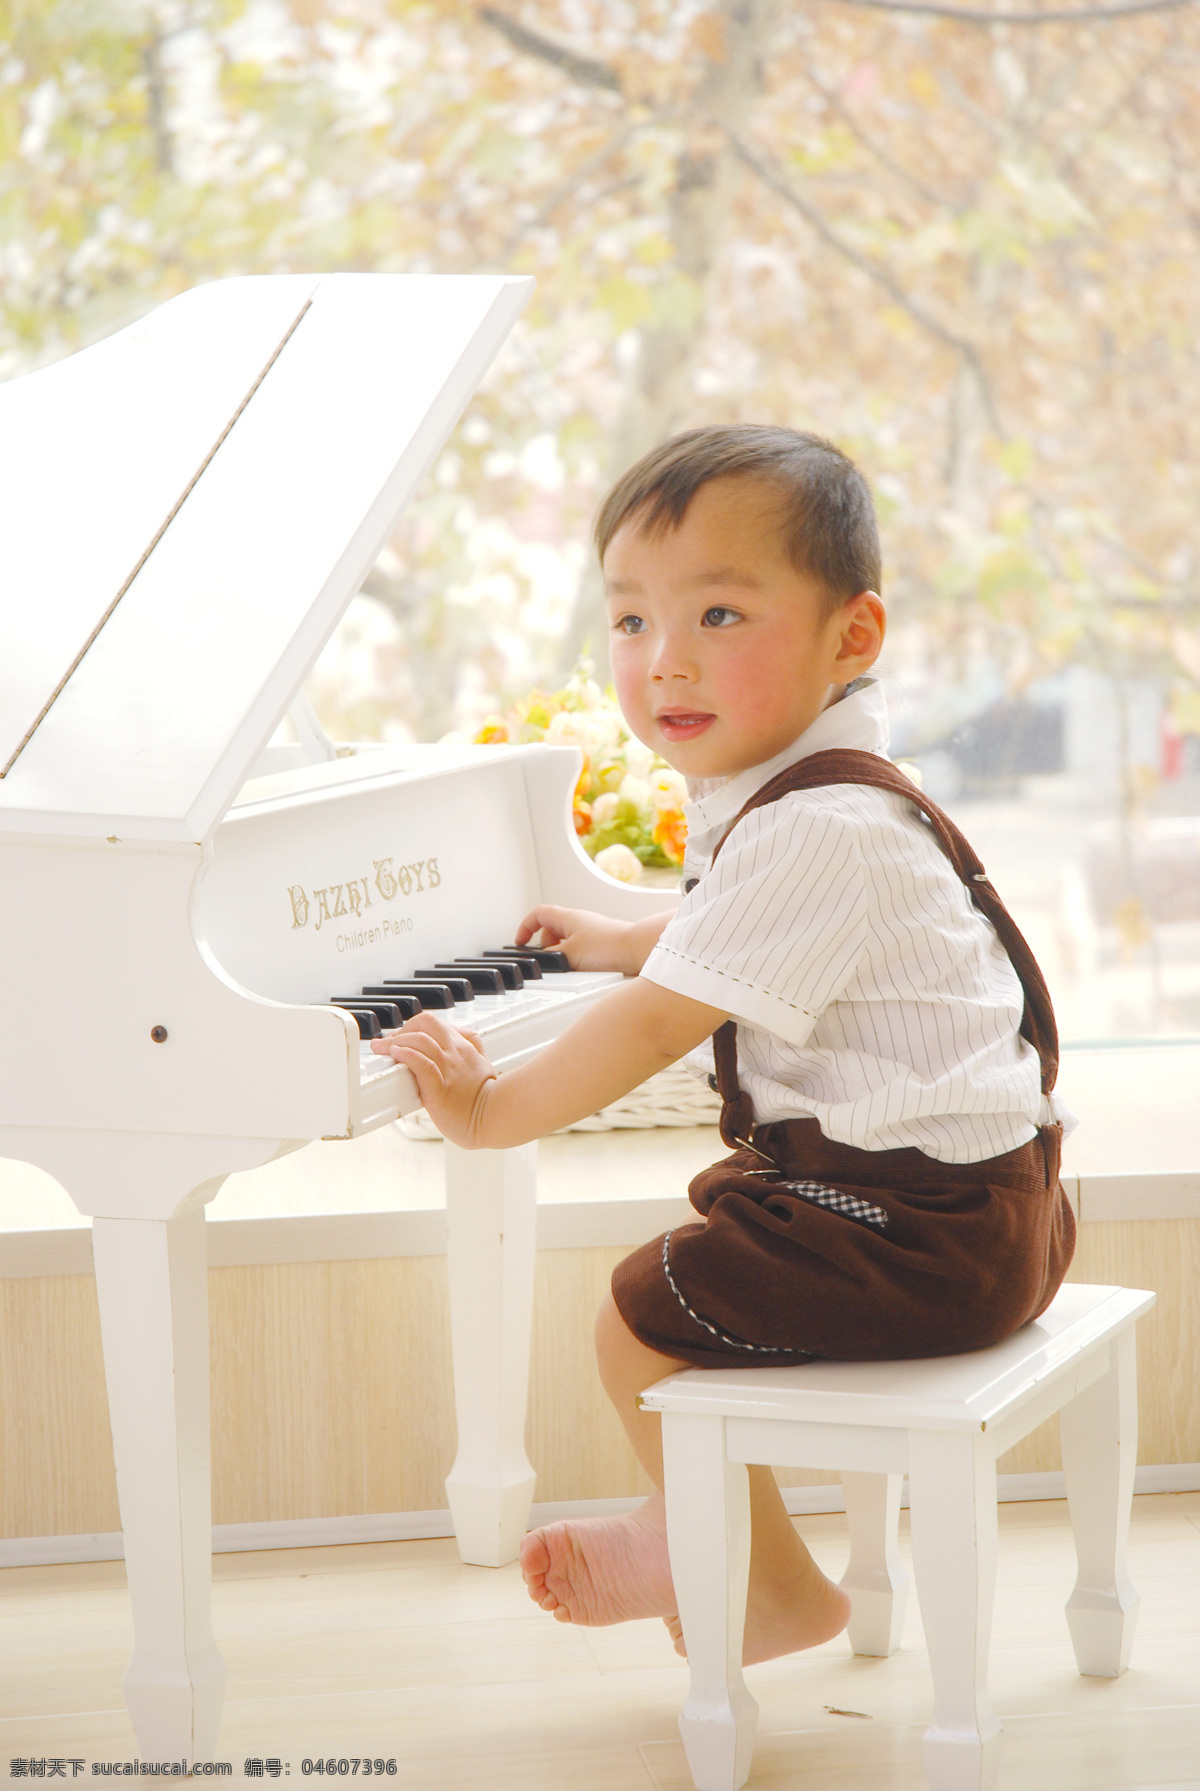 可可 弹钢琴 儿童 儿童摄影 儿童幼儿 钢琴 可爱 人物图库 小王子 小孩 摄影图库 psd源文件